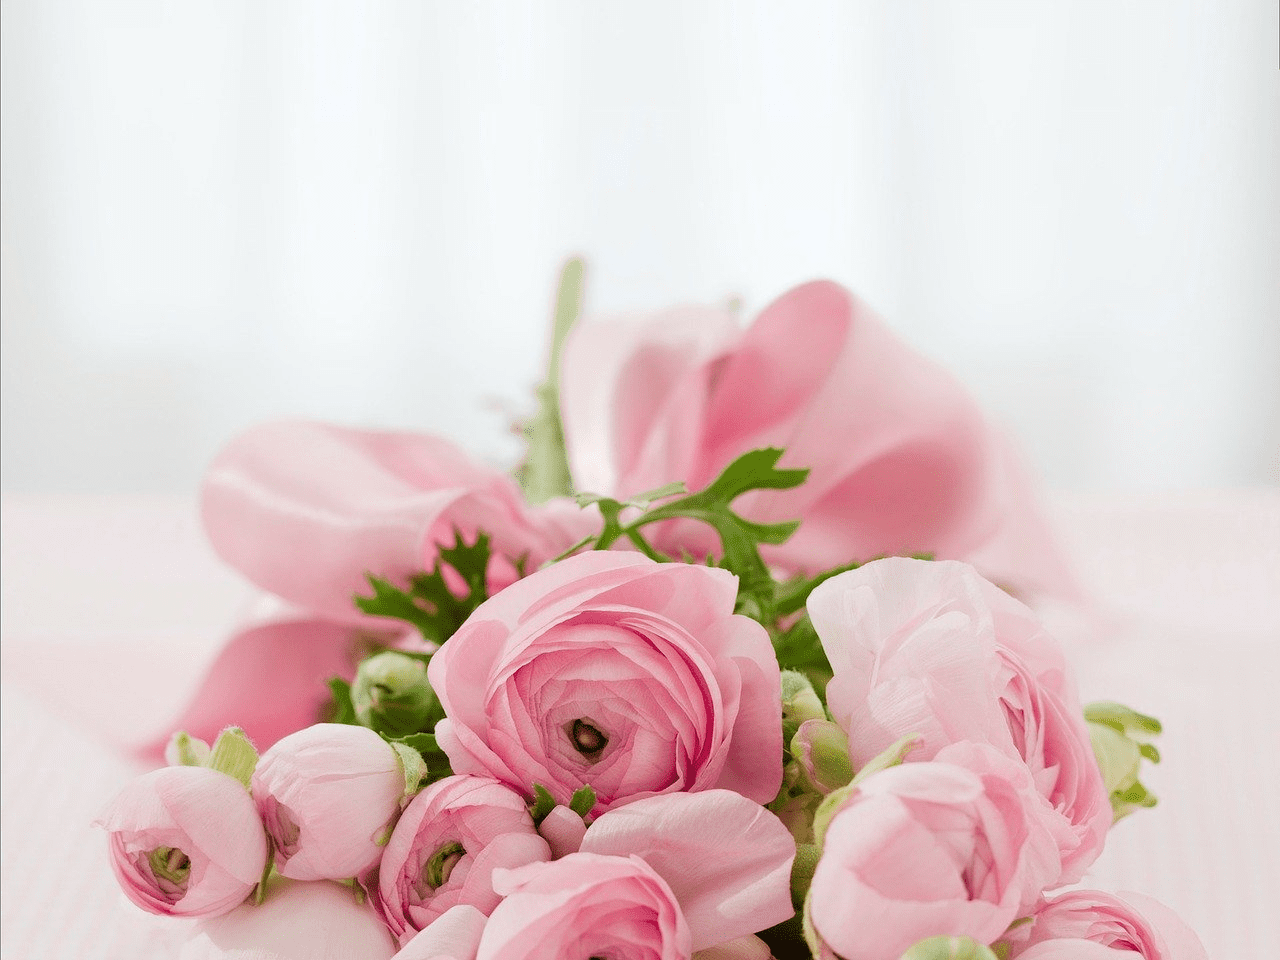 Купить букет цветов для мамы в Москве: каталог, фото, цены. Заказать цветы с доставкой